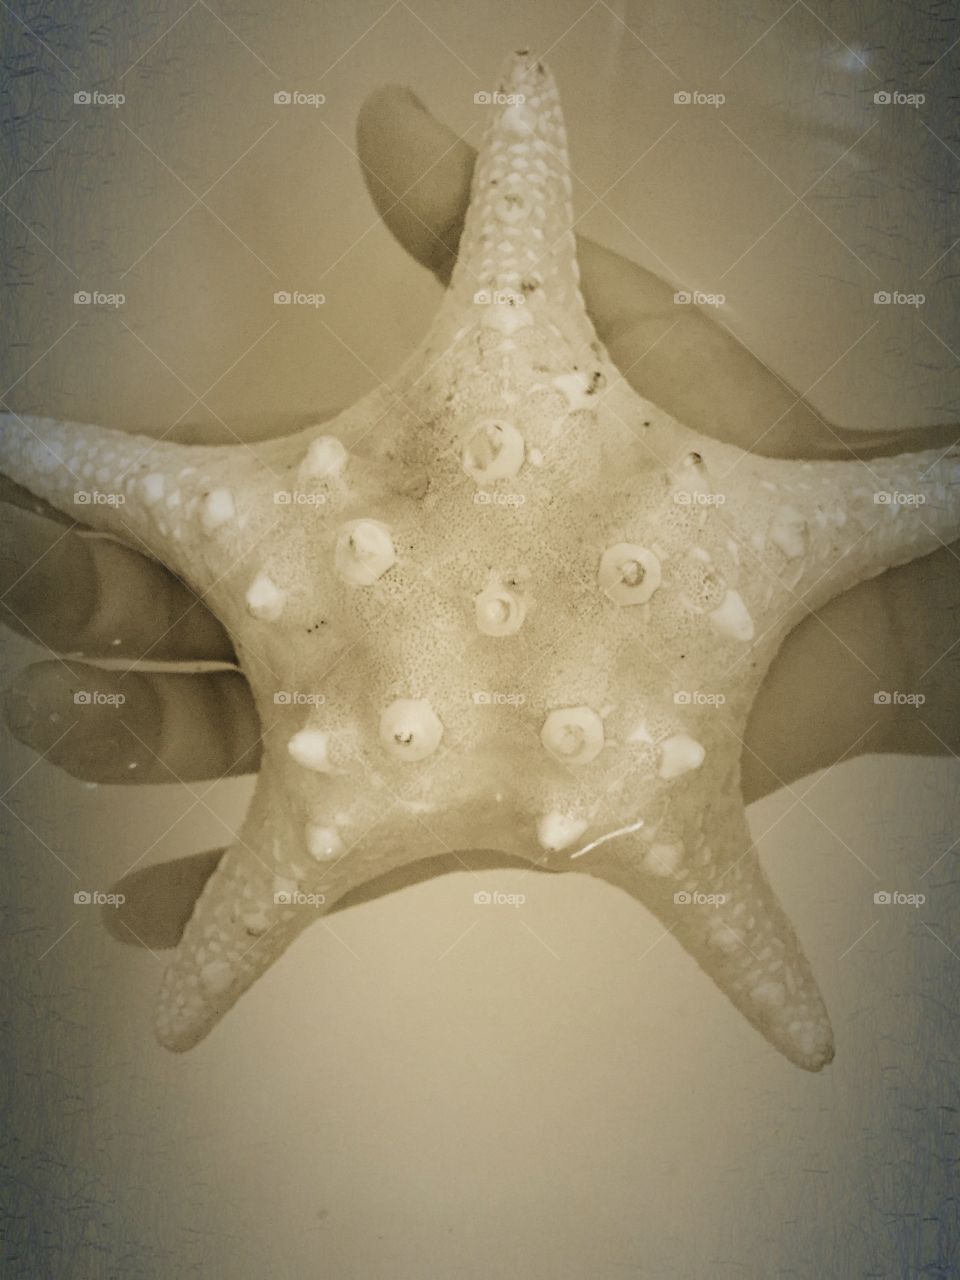 Starfish. Starfish